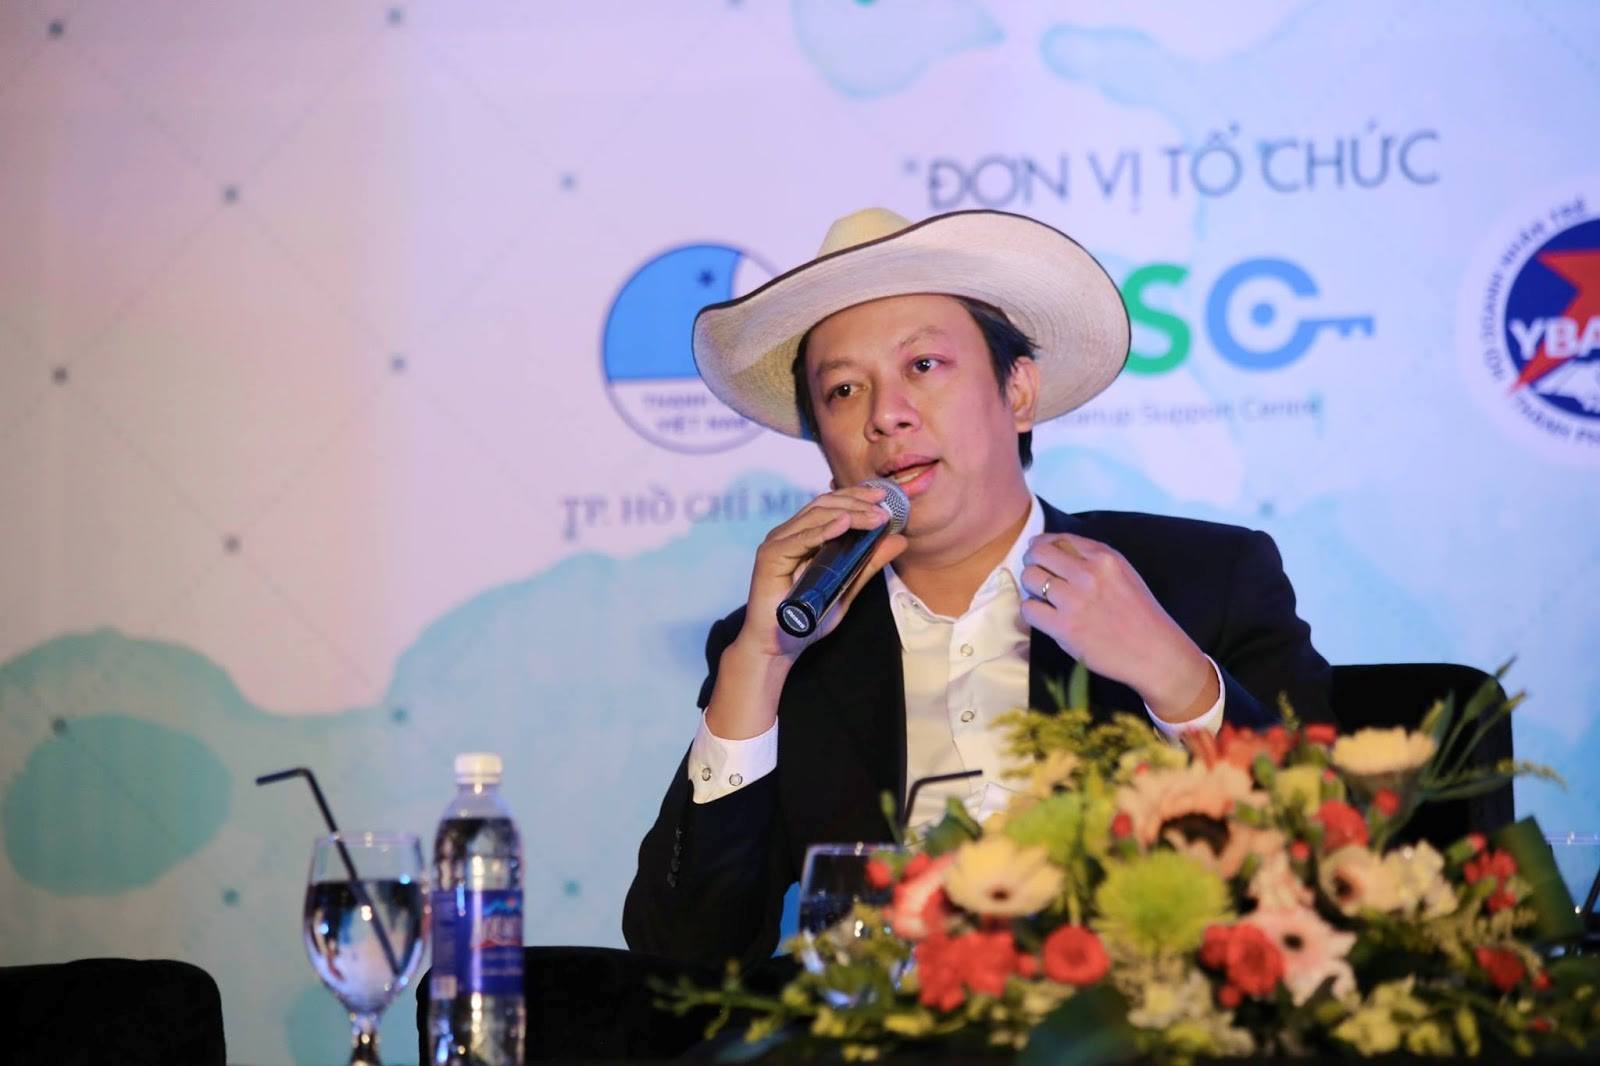 Nguyễn Đình Nguyên – CEO PhinDeli: Trước khi khởi nghiệp, các bạn trẻ nên làm việc ở các công ty để có kinh nghiệm